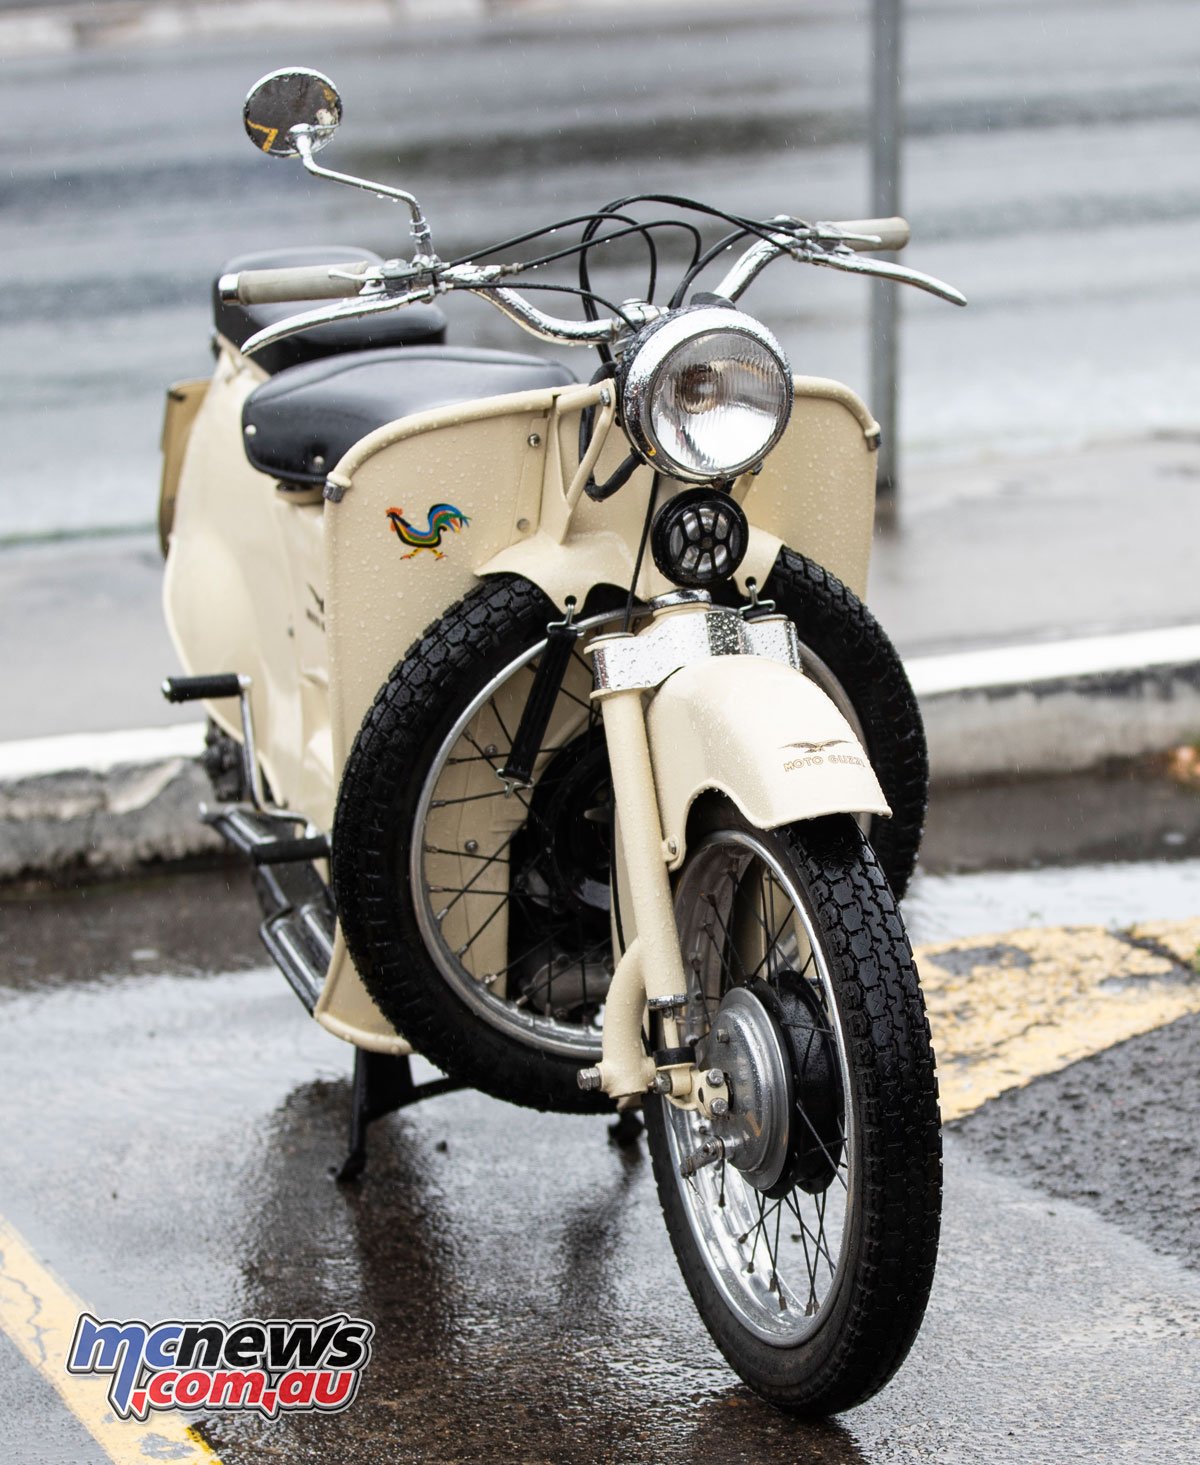 Motociclo-Moto-Guzzi-NSW-Centenario-Ride-Day-A75I3250.jpg